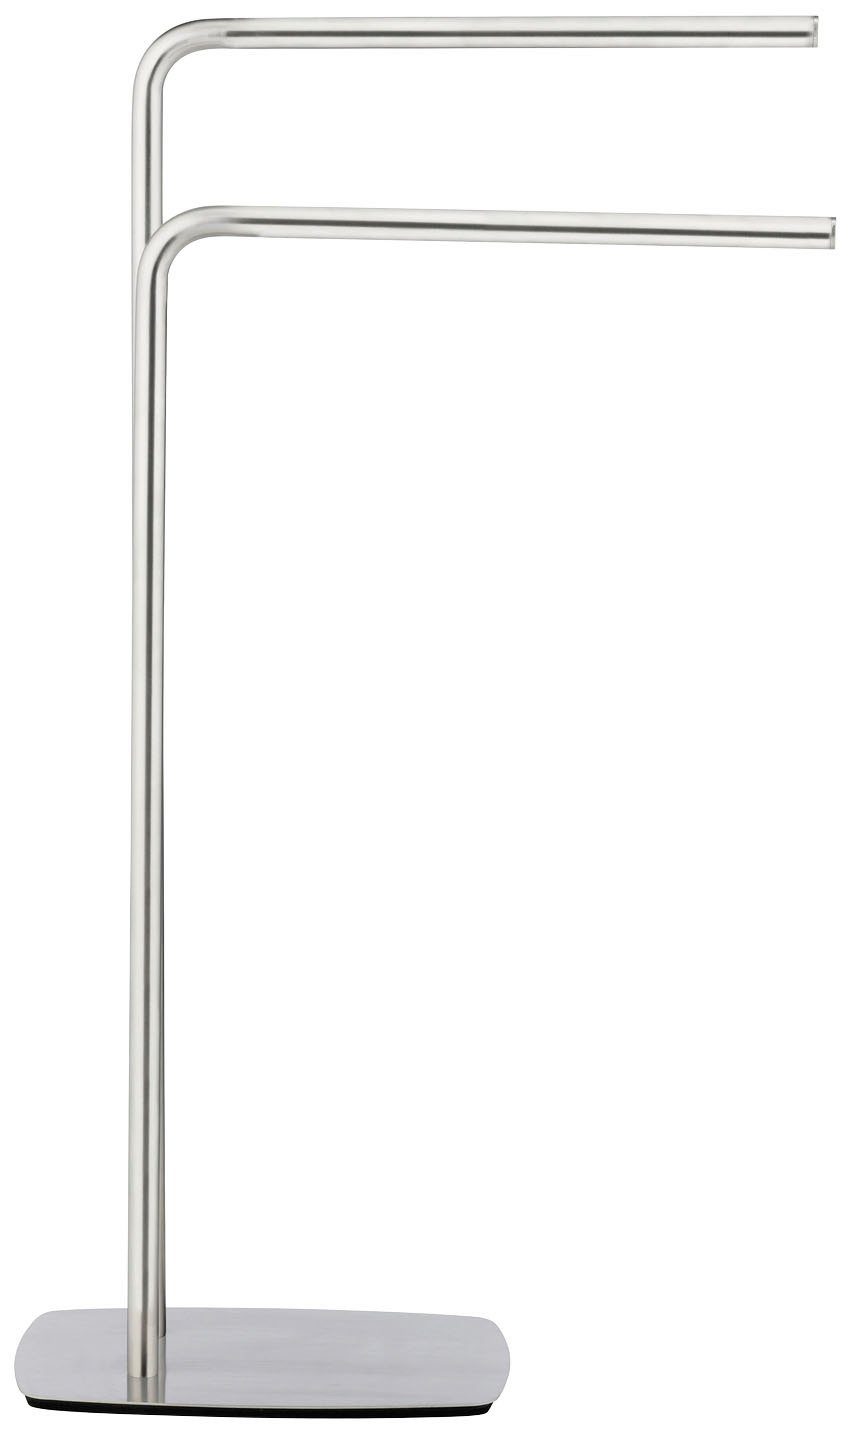 WENKO Handtuchständer Iria, mit 2 Handtuchstangen, Mit schwerer Bodenplatte  aus Edelstahl für einen sicheren Stand